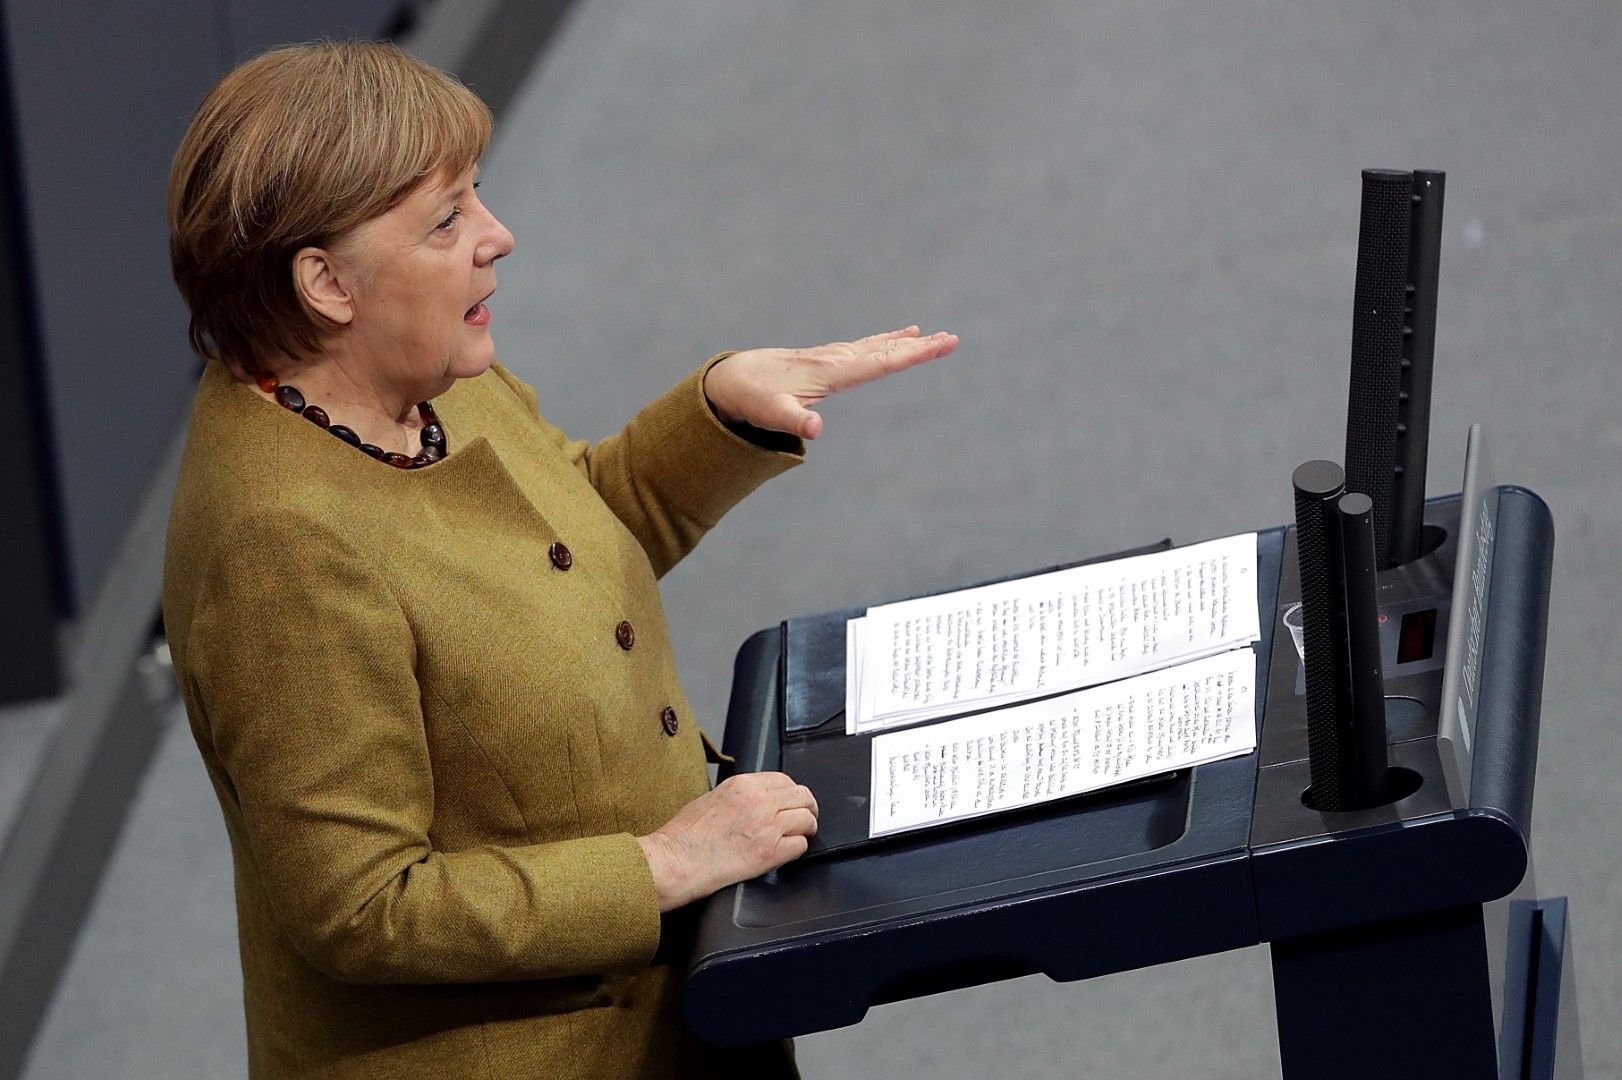 През 2020 година Германия изгуби репутацията си на фискално консервативна държава, след като правителството наканцлера Ангела Меркел започна многомилиардни програми в подкрепа на икономиката по време на кризата